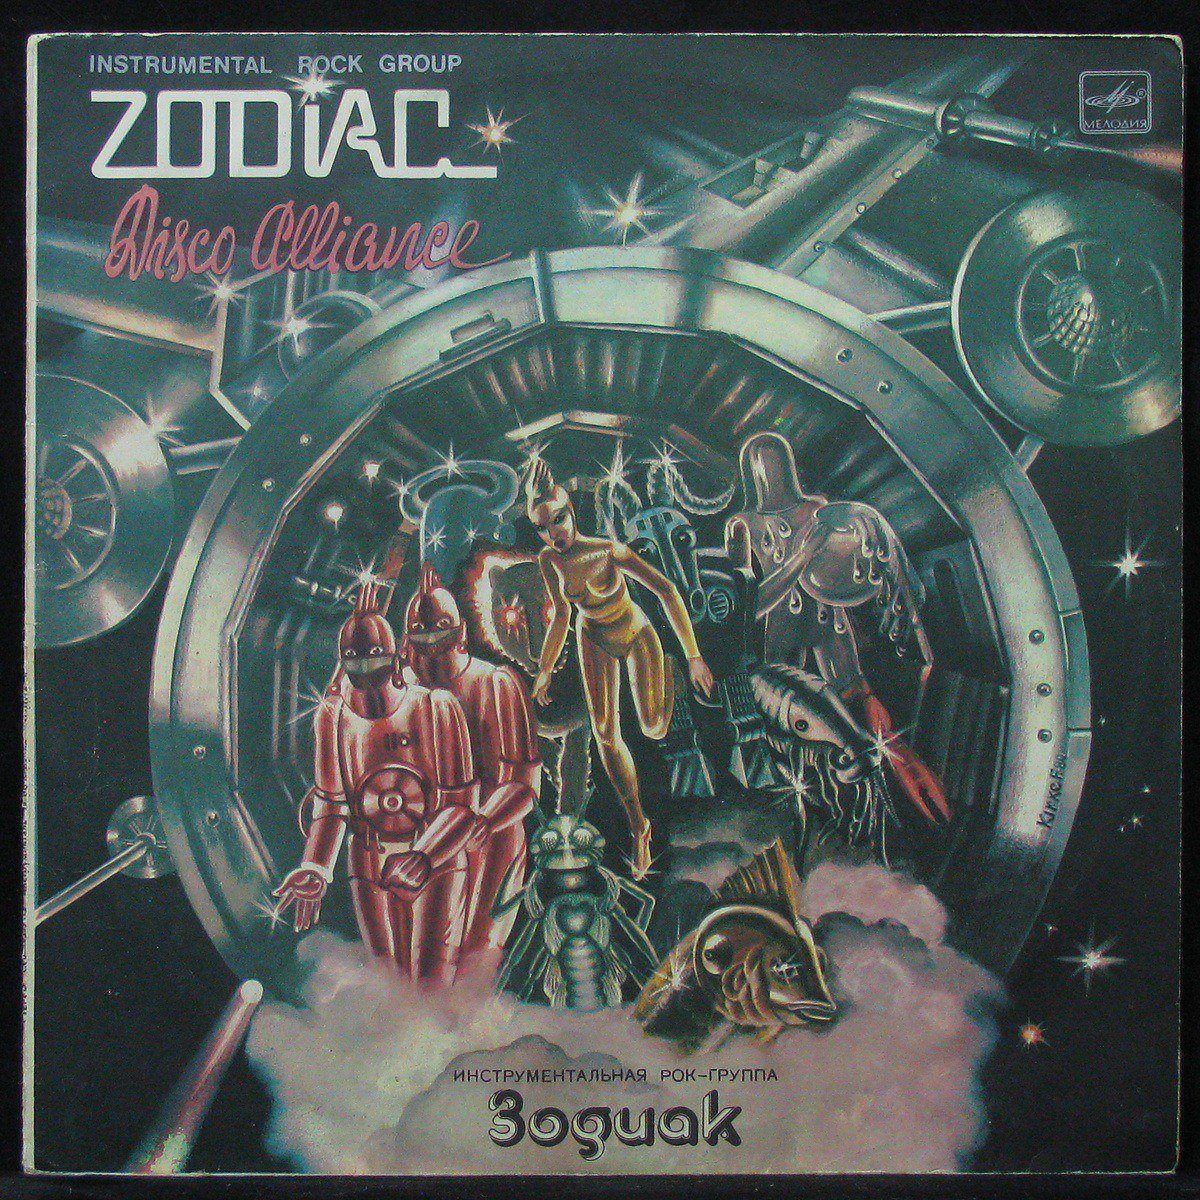 Zodiac песни. Пластинка Зодиак 1980. Zodiac группа обложка. Zodiac Disco Alliance. ВИА Зодиак обложка.